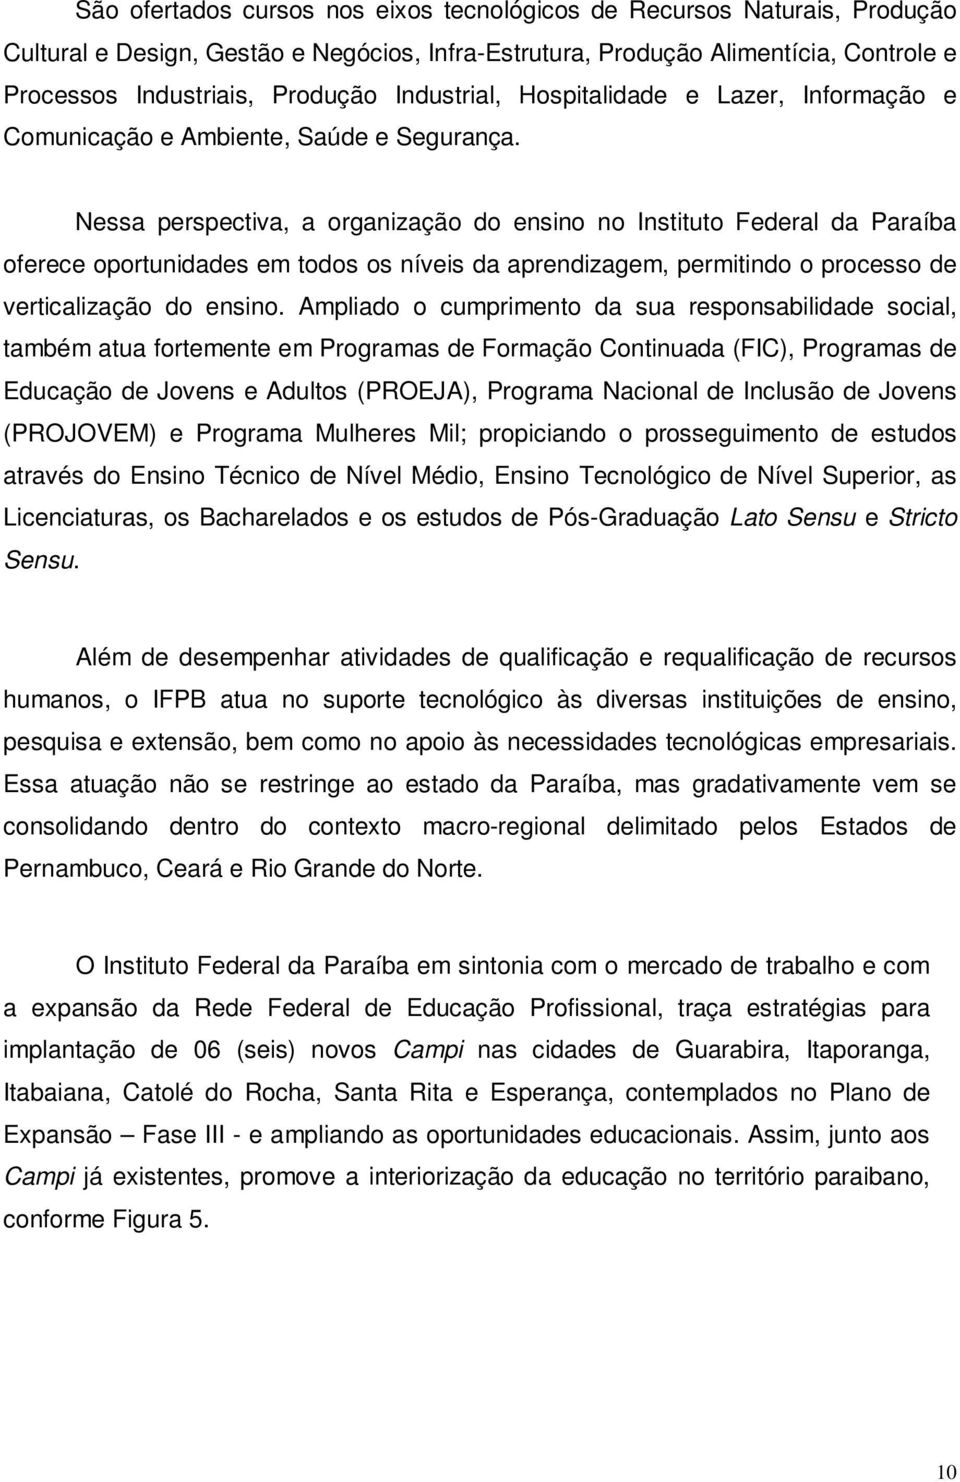 Nessa perspectiva, a organização do ensino no Instituto Federal da Paraíba oferece oportunidades em todos os níveis da aprendizagem, permitindo o processo de verticalização do ensino.